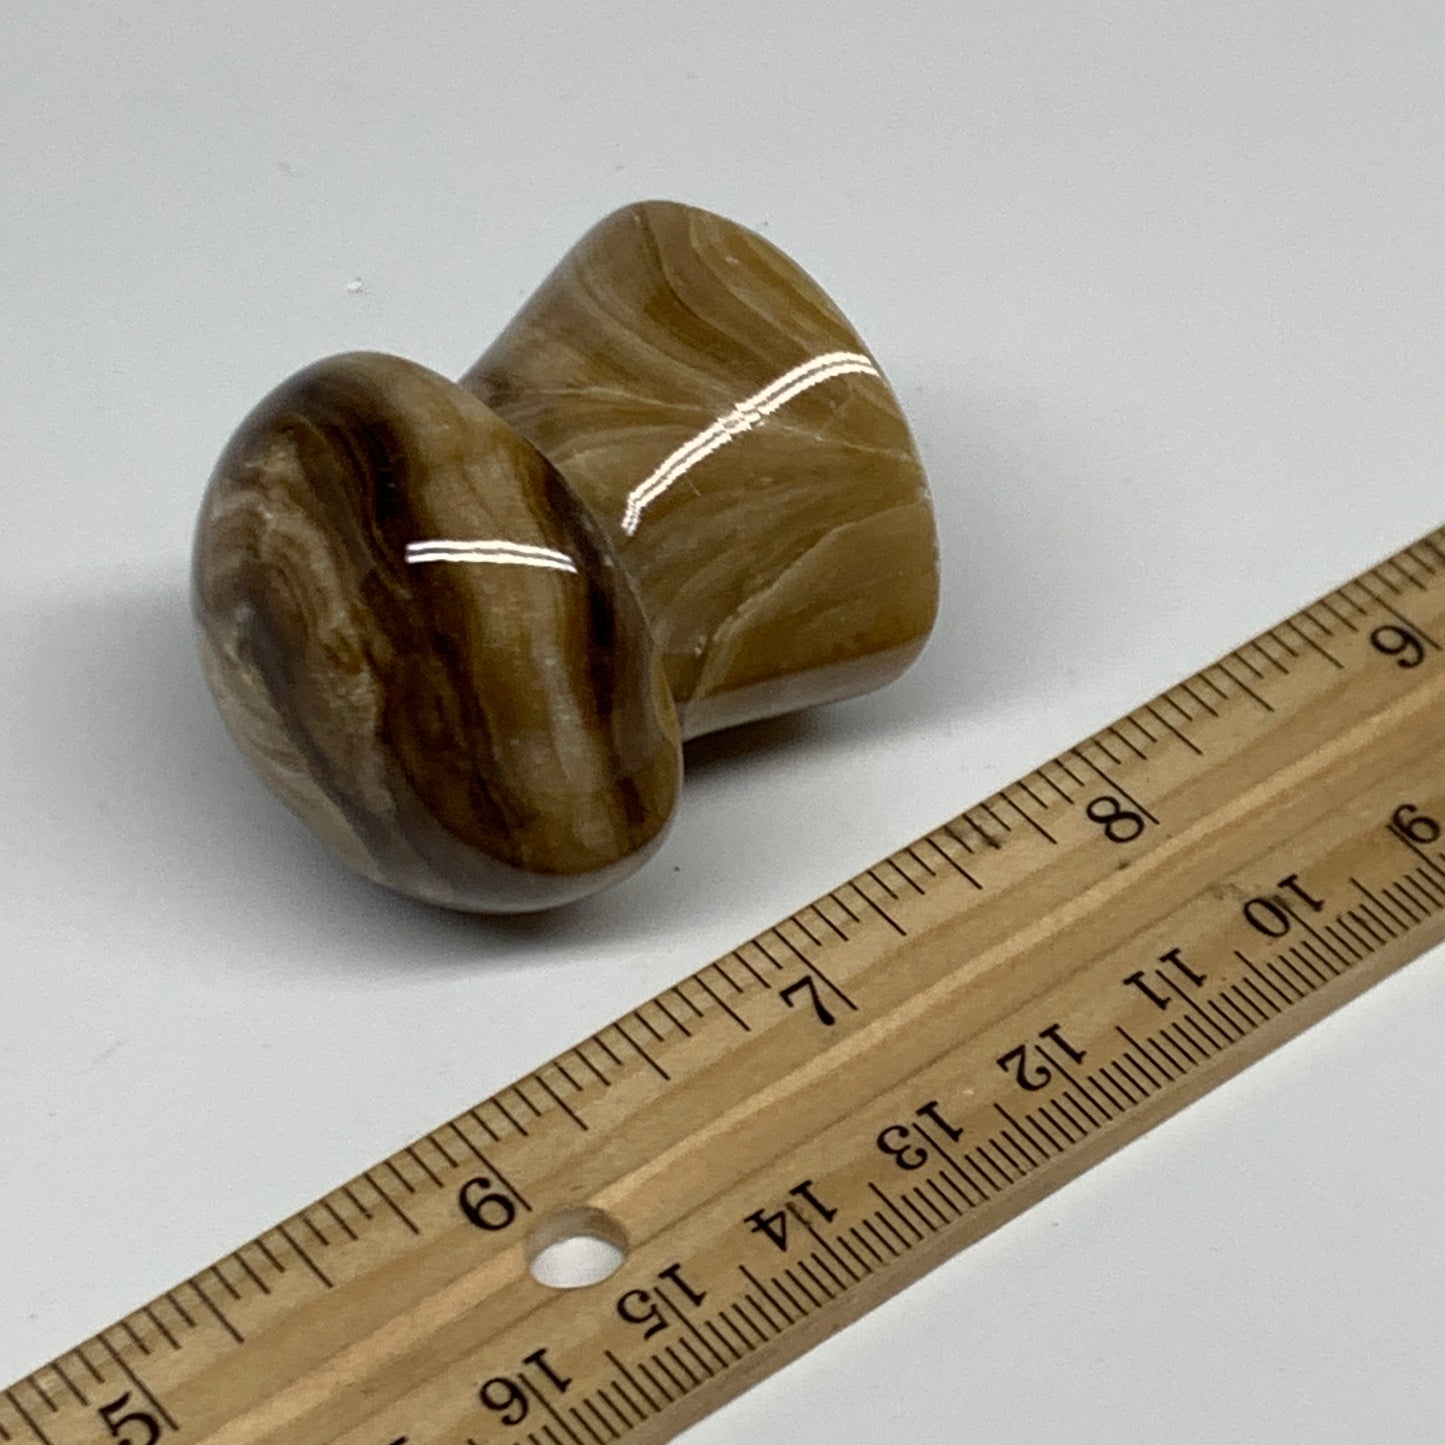 91g, 1.6"x1.4", Chocolate Calcite Mushroom 2 Pieces bonded @Pakistan, B31709